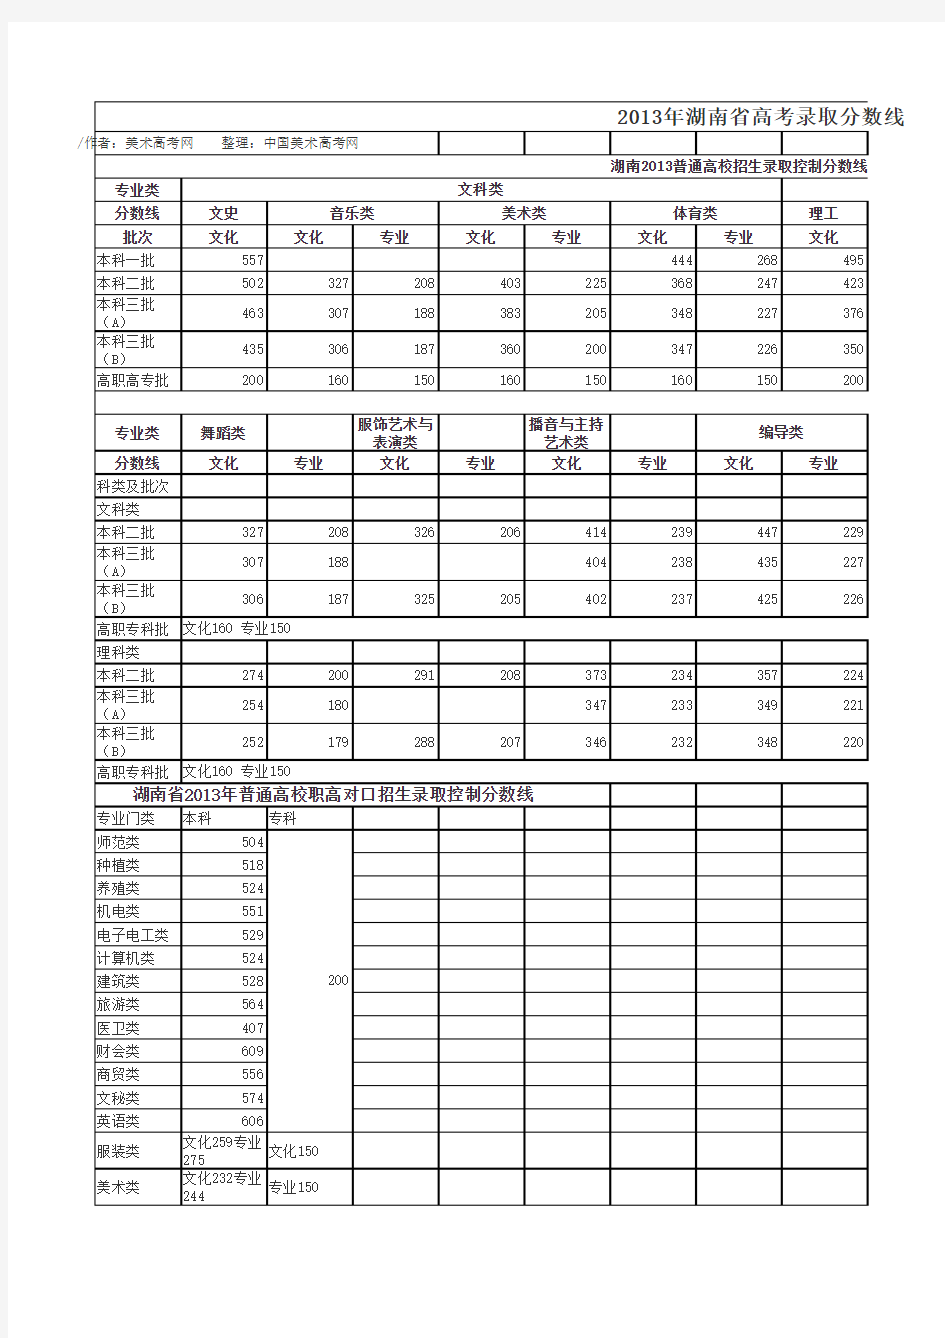 2013年湖南省高考录取分数线(含艺术类)